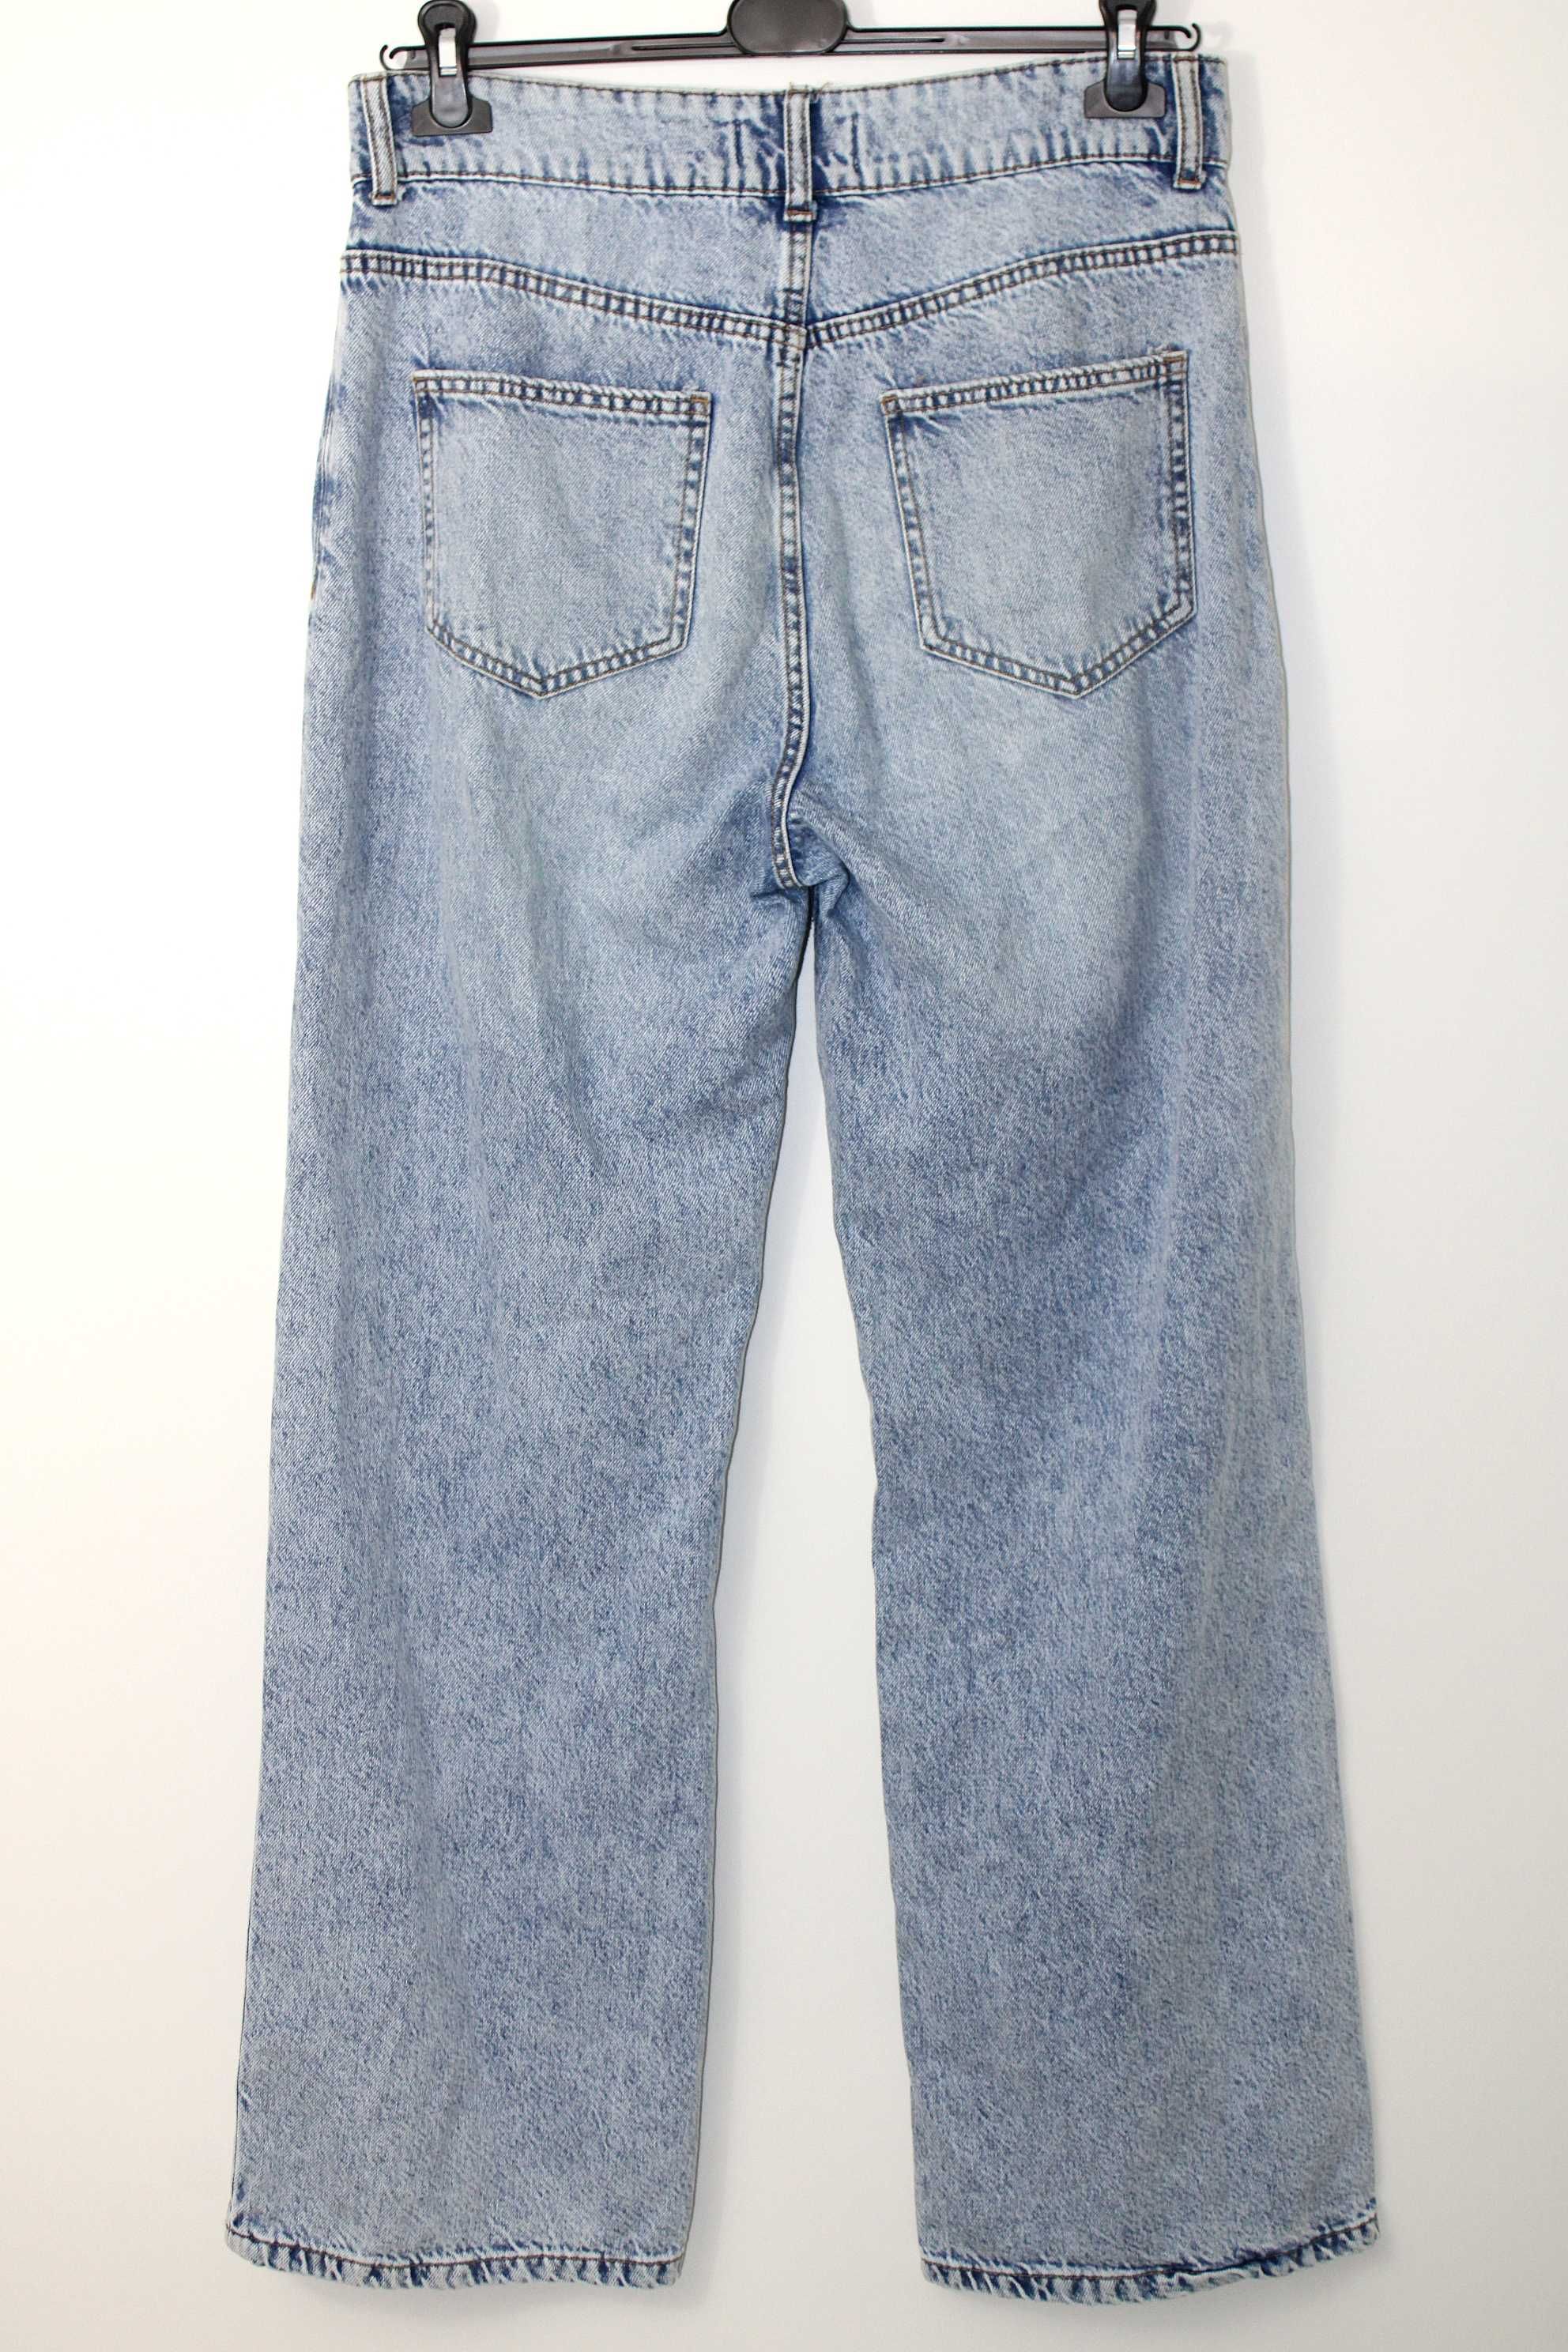 x4 PRIMARK Stylowe Damskie Spodnie Jeans Dziury Wysoki Stan 42 XL